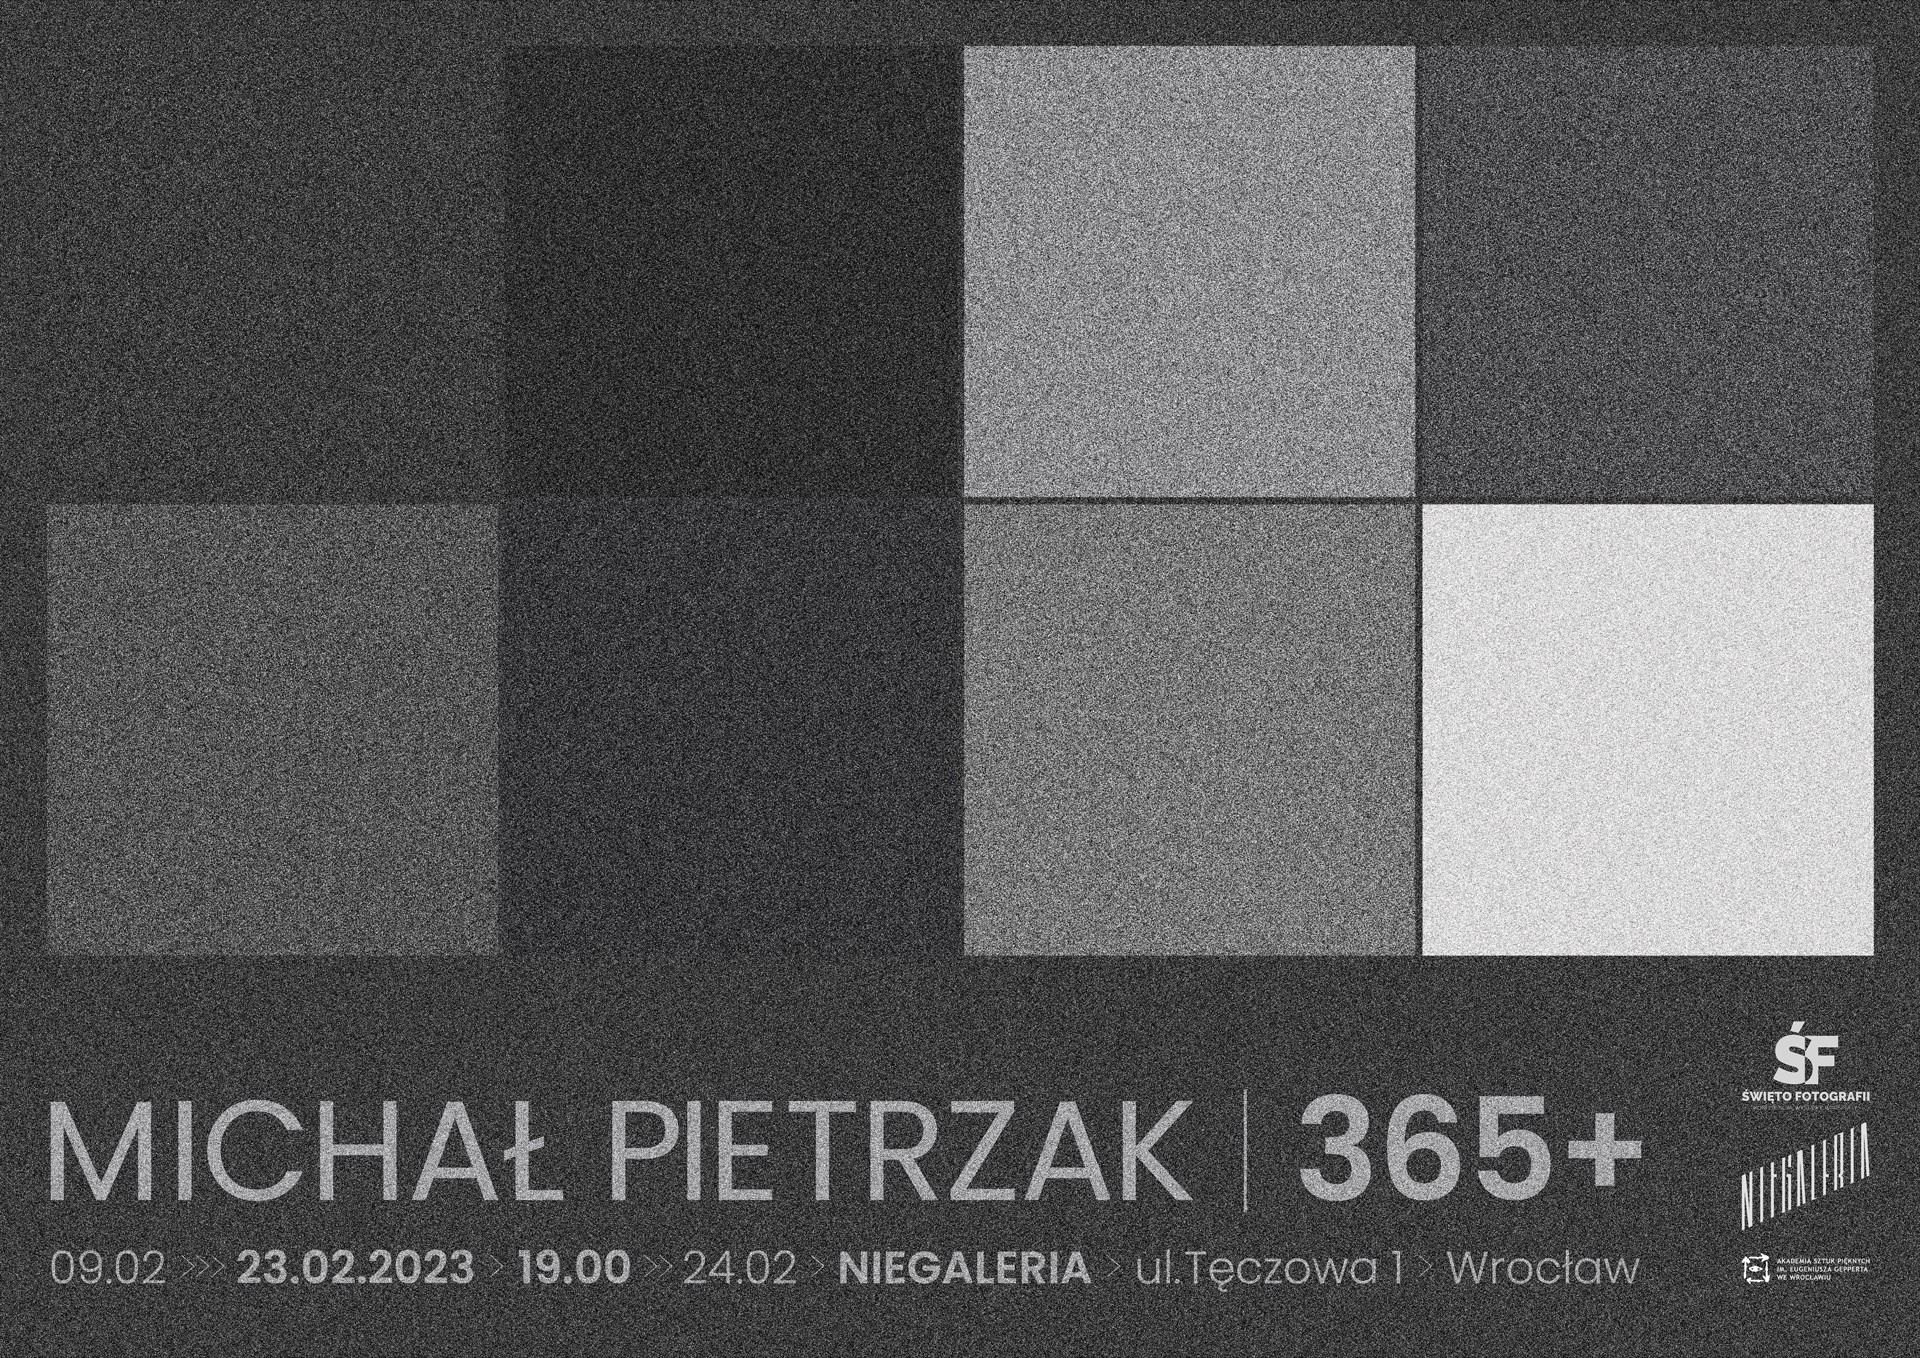 Michał Pietrzak 365+